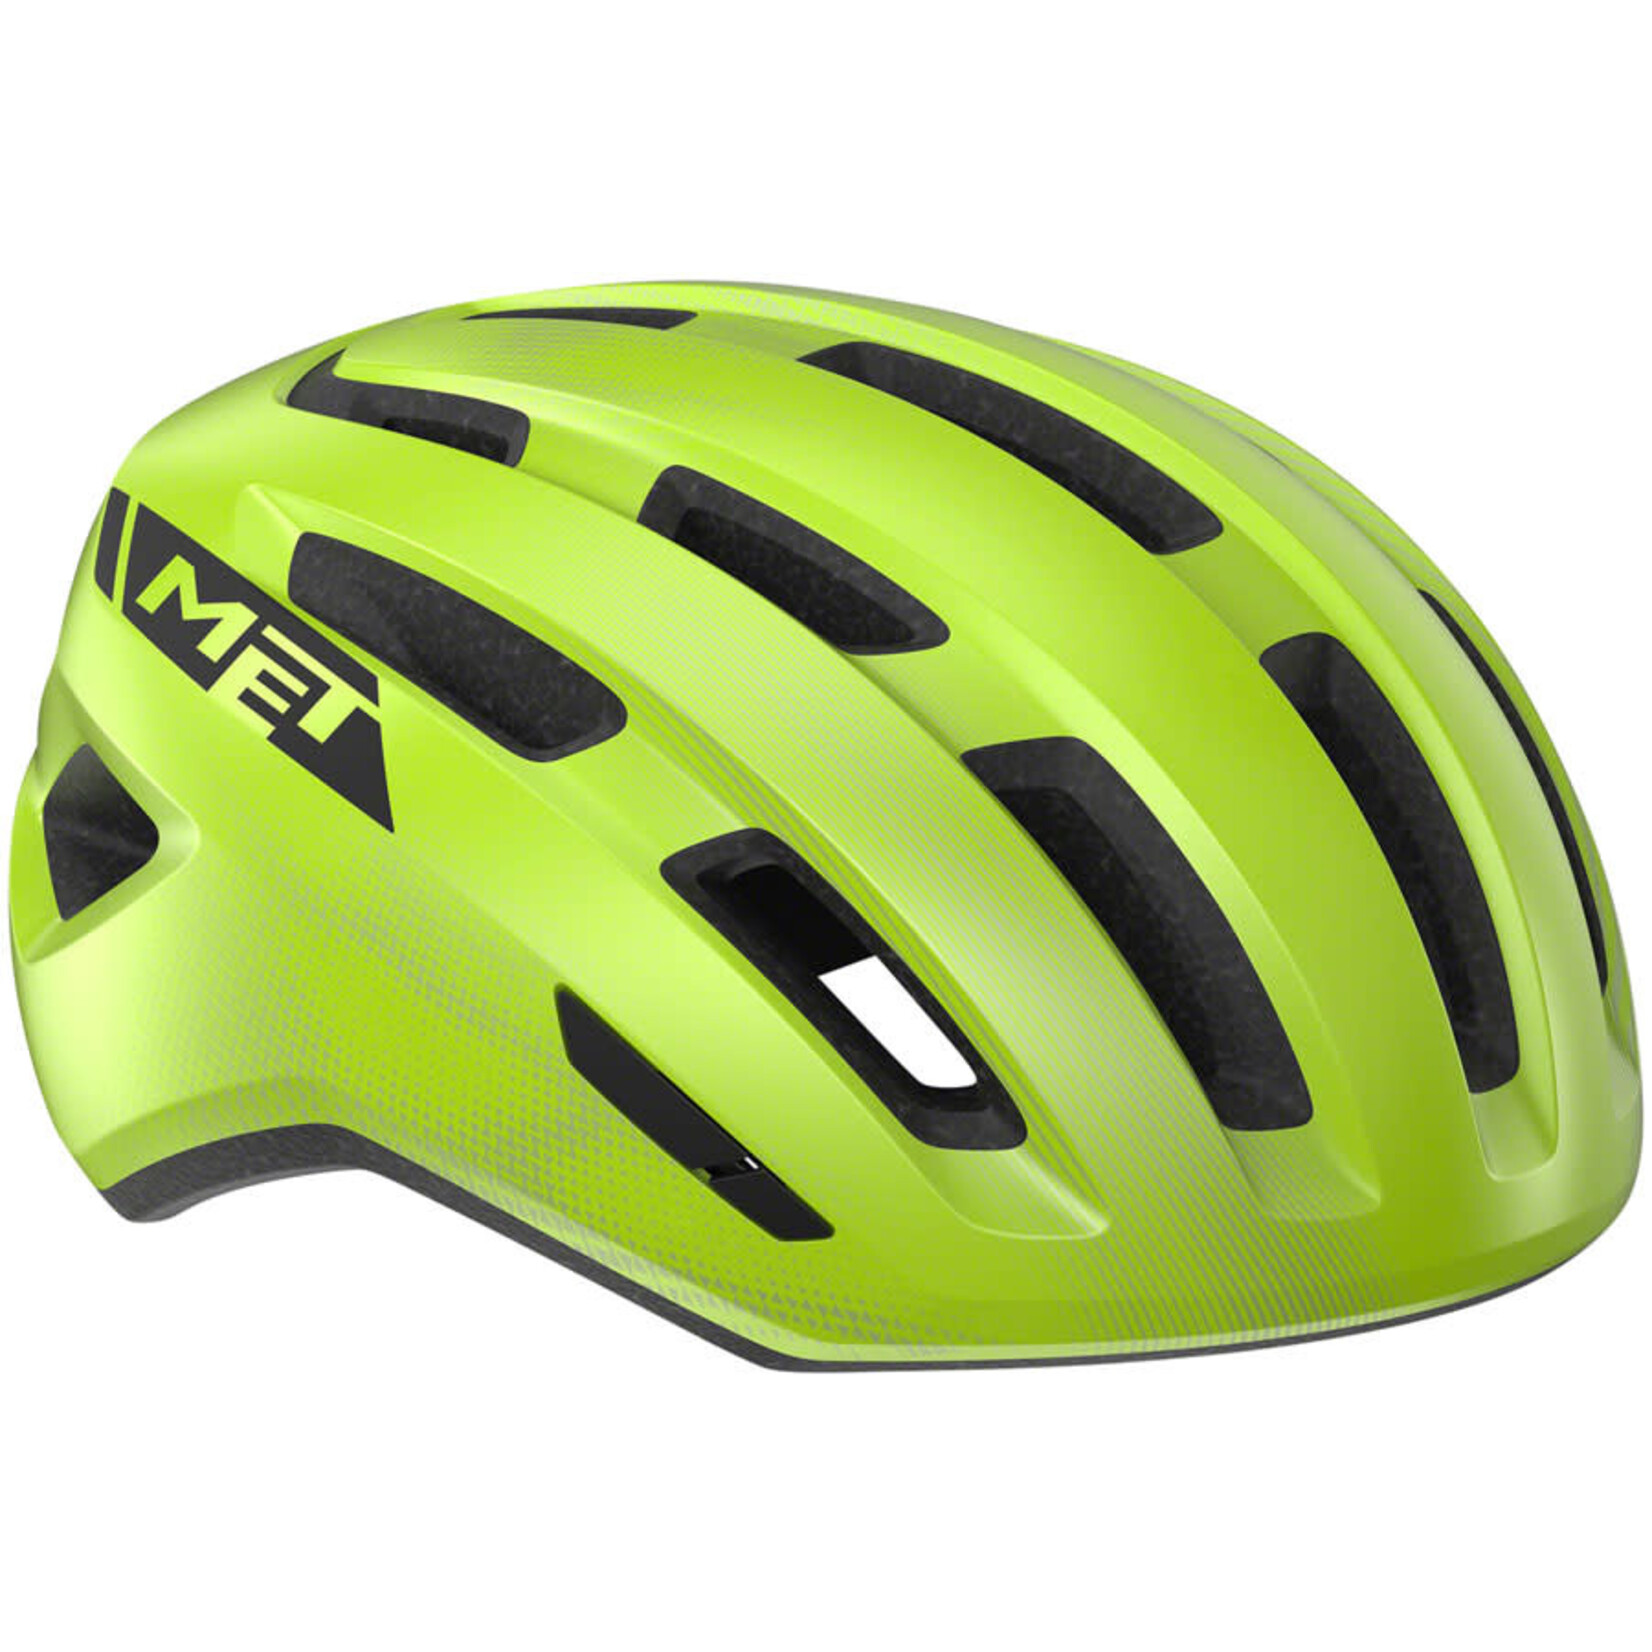 MET Helmets MET Miles MIPS Helmet - Fluorescent Yellow, Glossy, Small/Medium